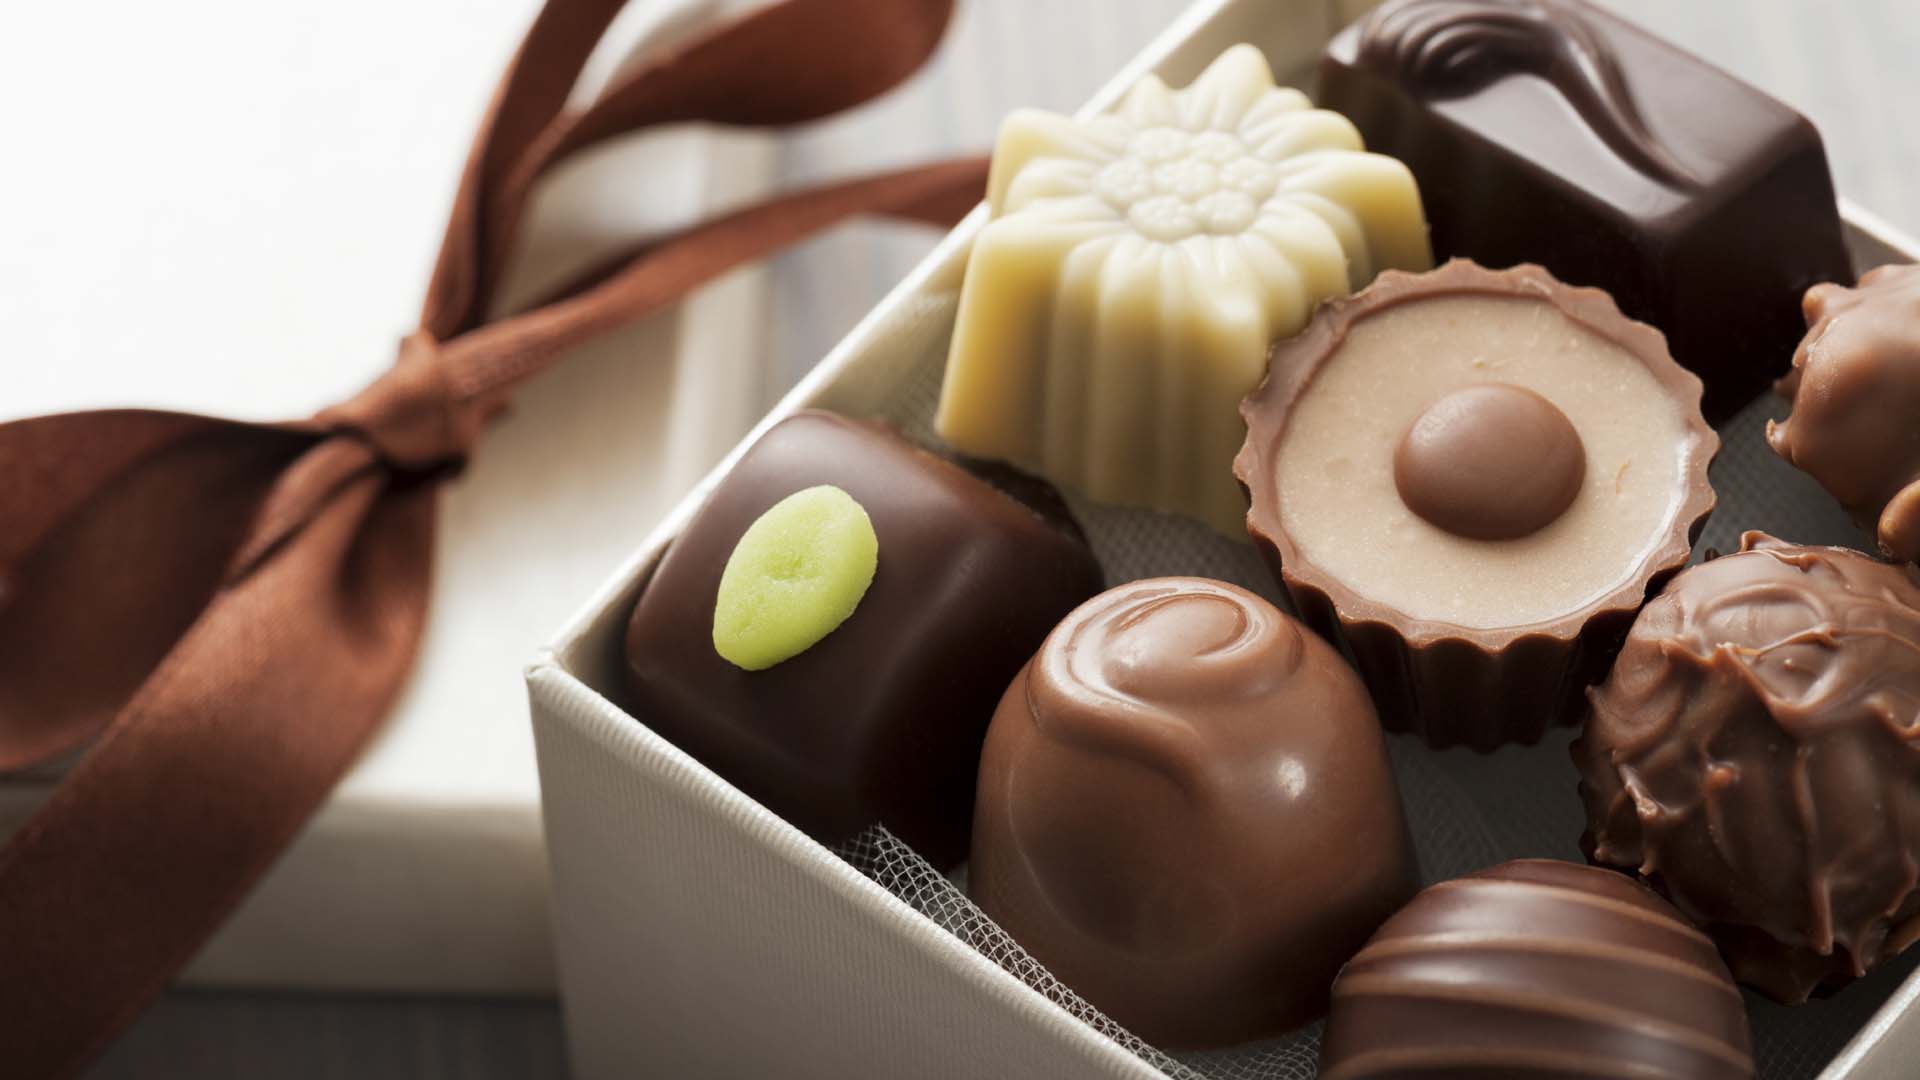 10 marcas criollas participaron en la feria de chocolate más importante del mundo, lo puro y artesanal fueron tendencia